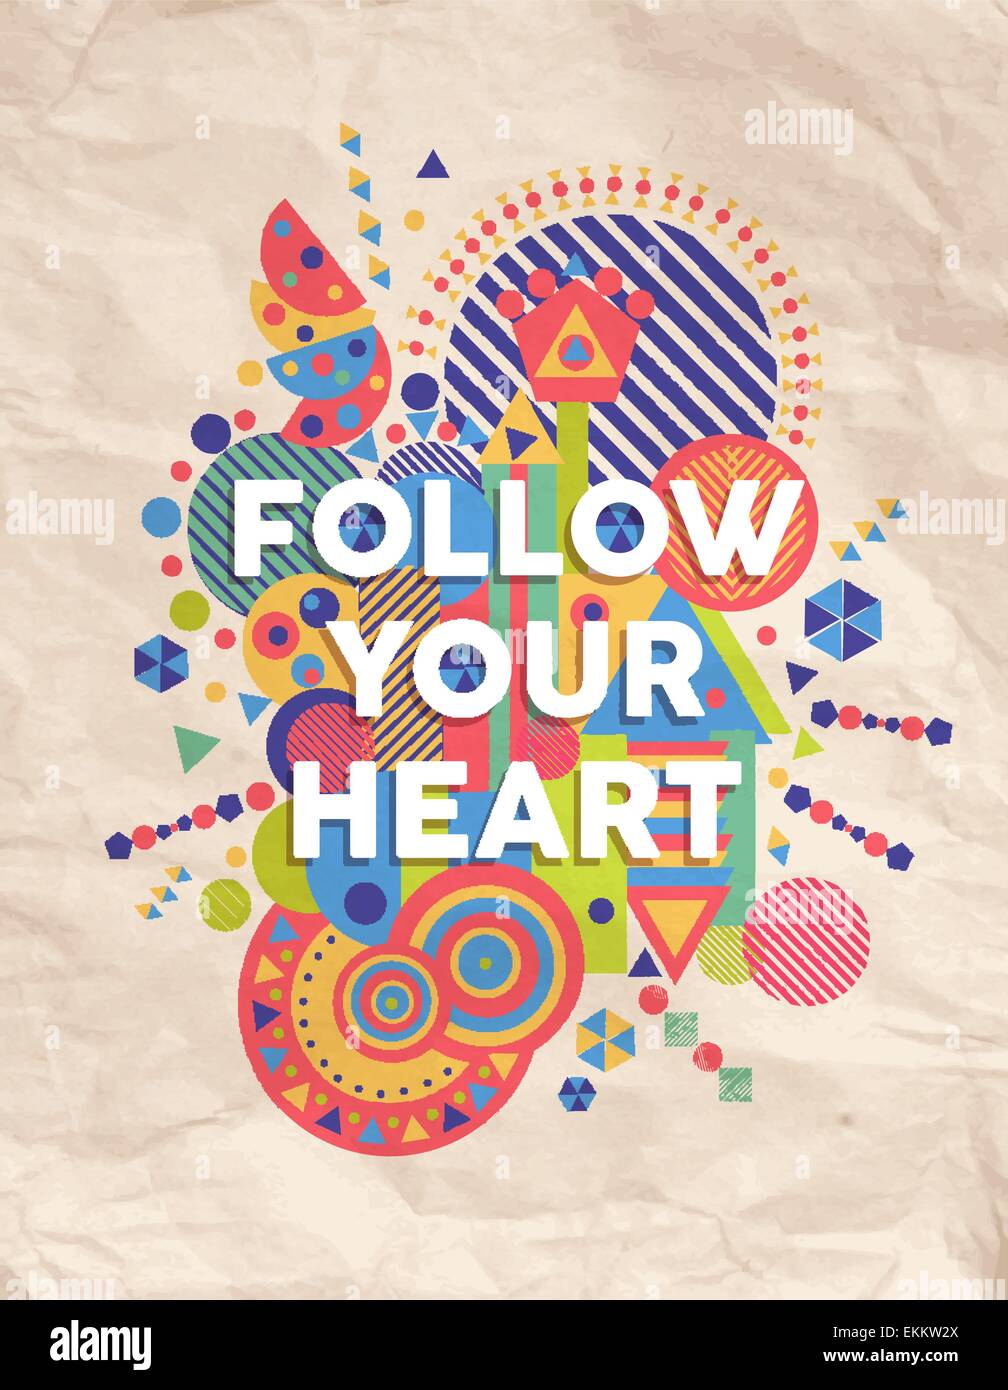 Suivez votre cœur typographie colorée de l'affiche. Motivation inspirante citation définition idéal pour carte de vœux. Illustration de Vecteur